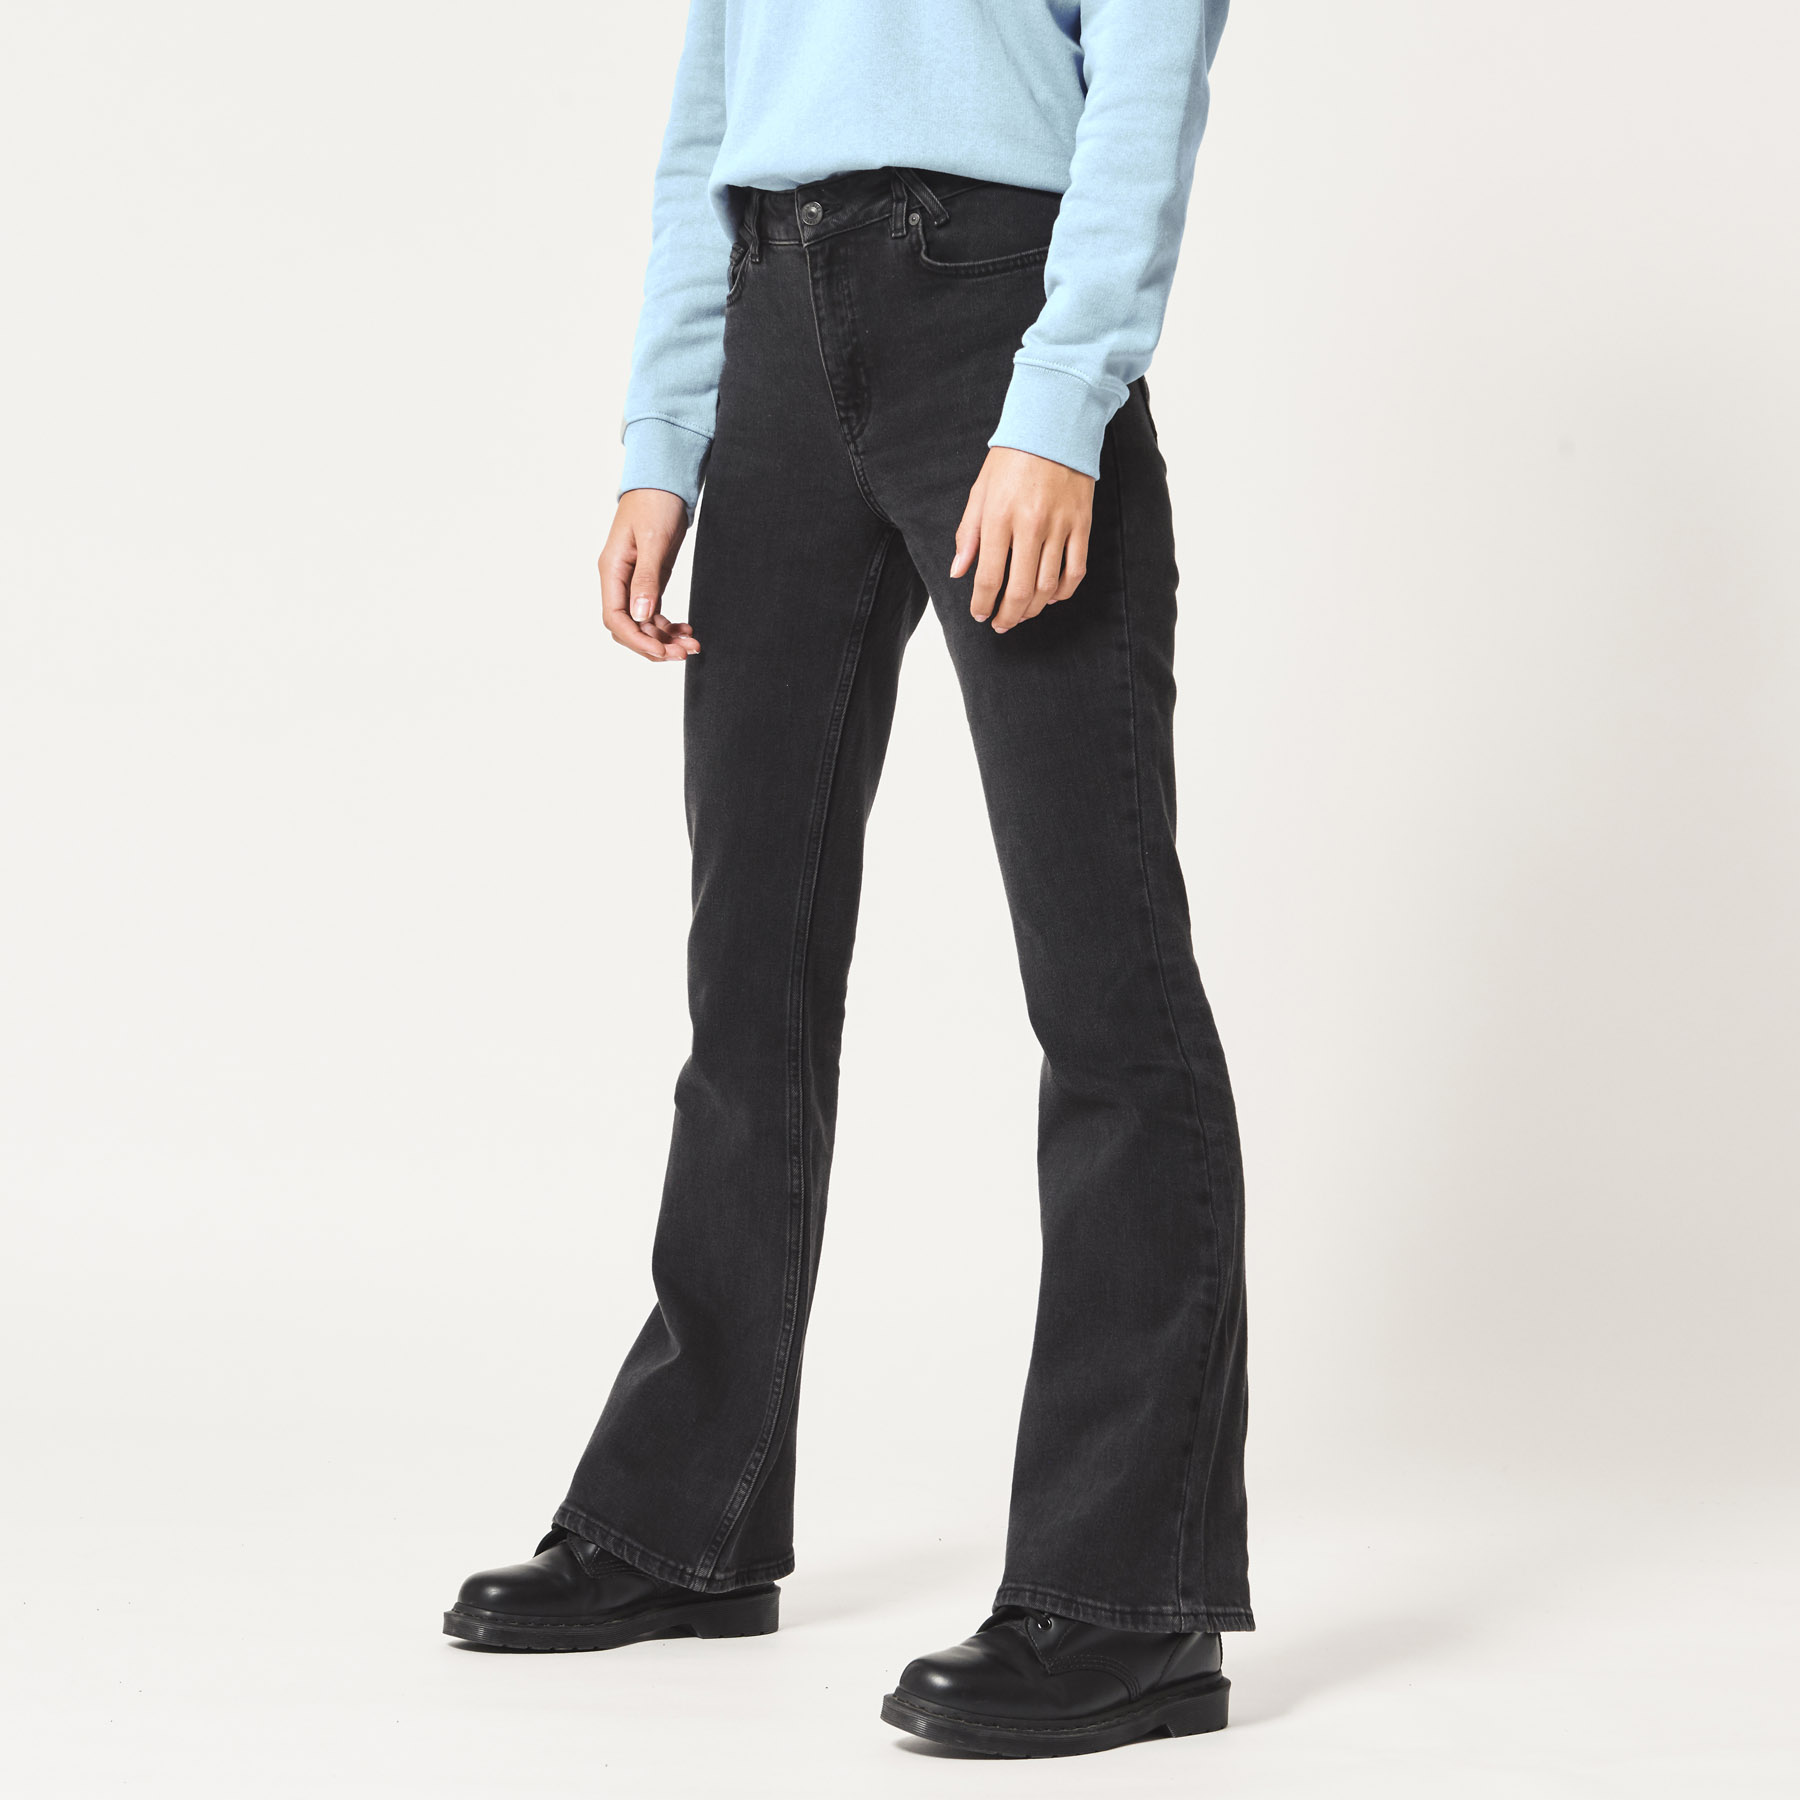 Damen Flared jeans hoher Bund Schwarz | America Today